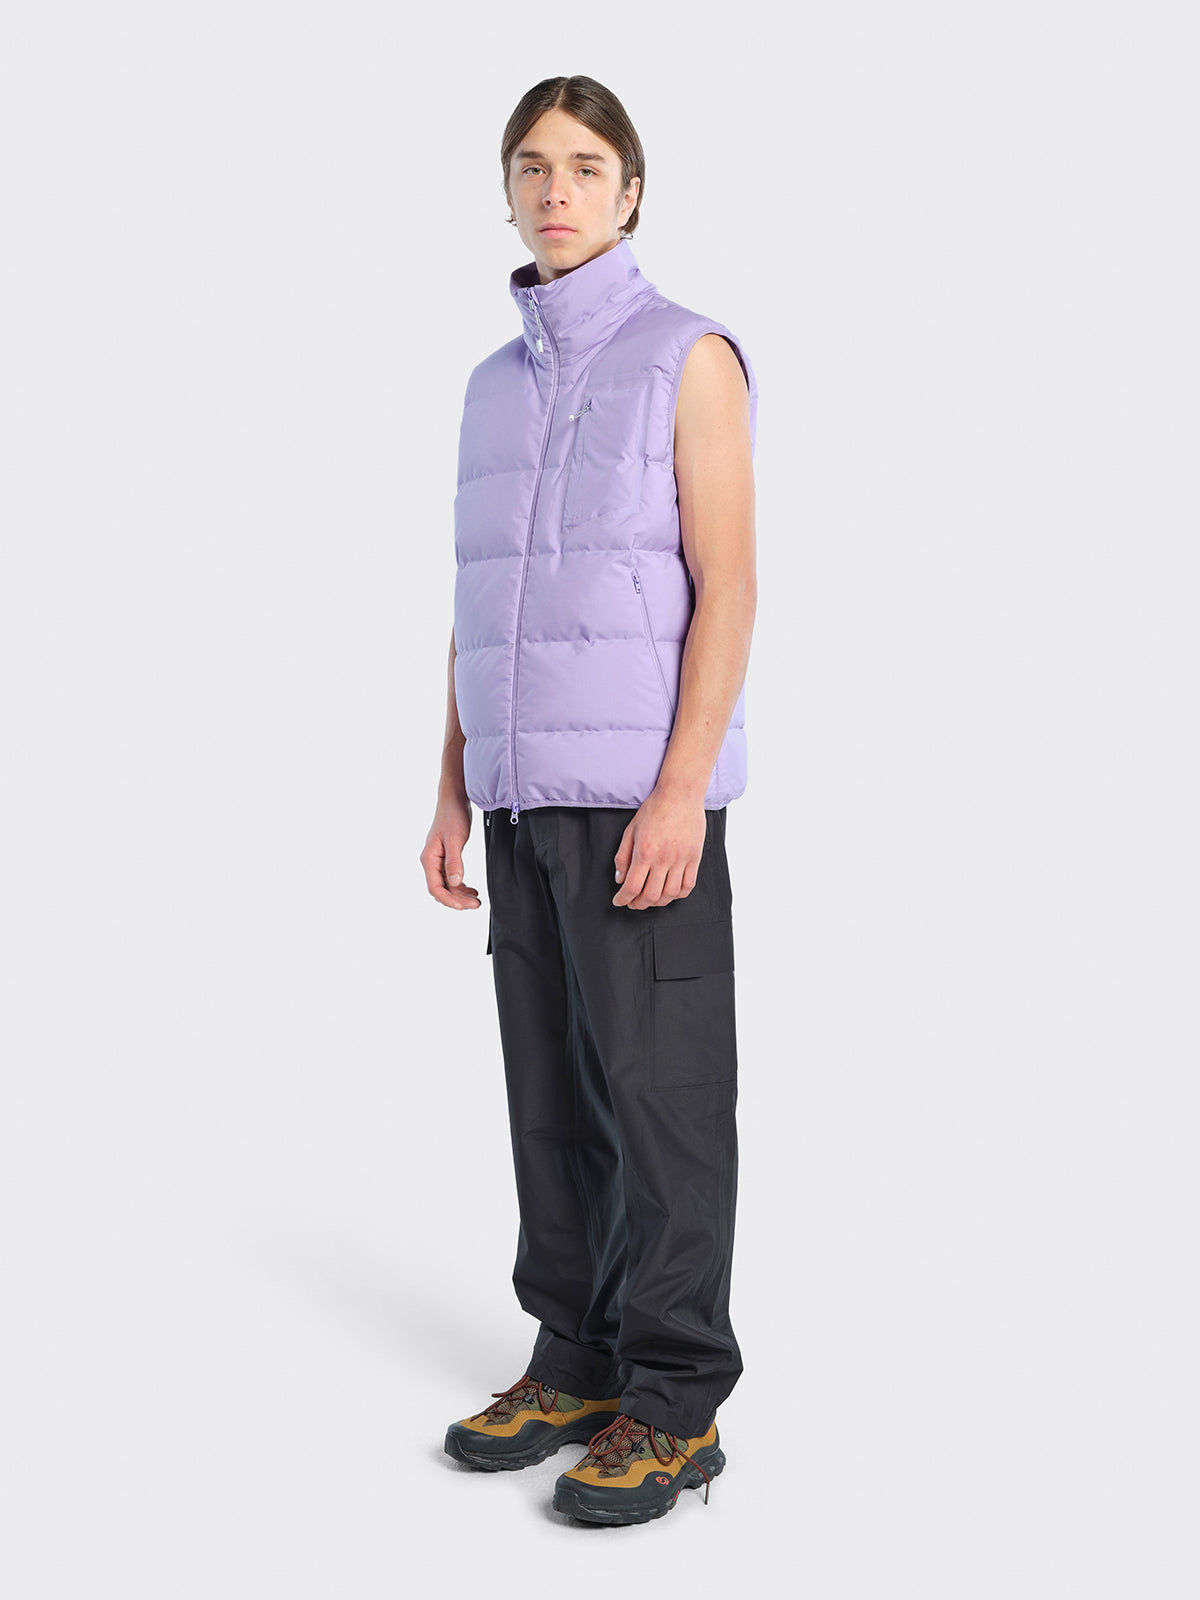 Man dressed in Emblem vest from Blæst in the color Digital Purple